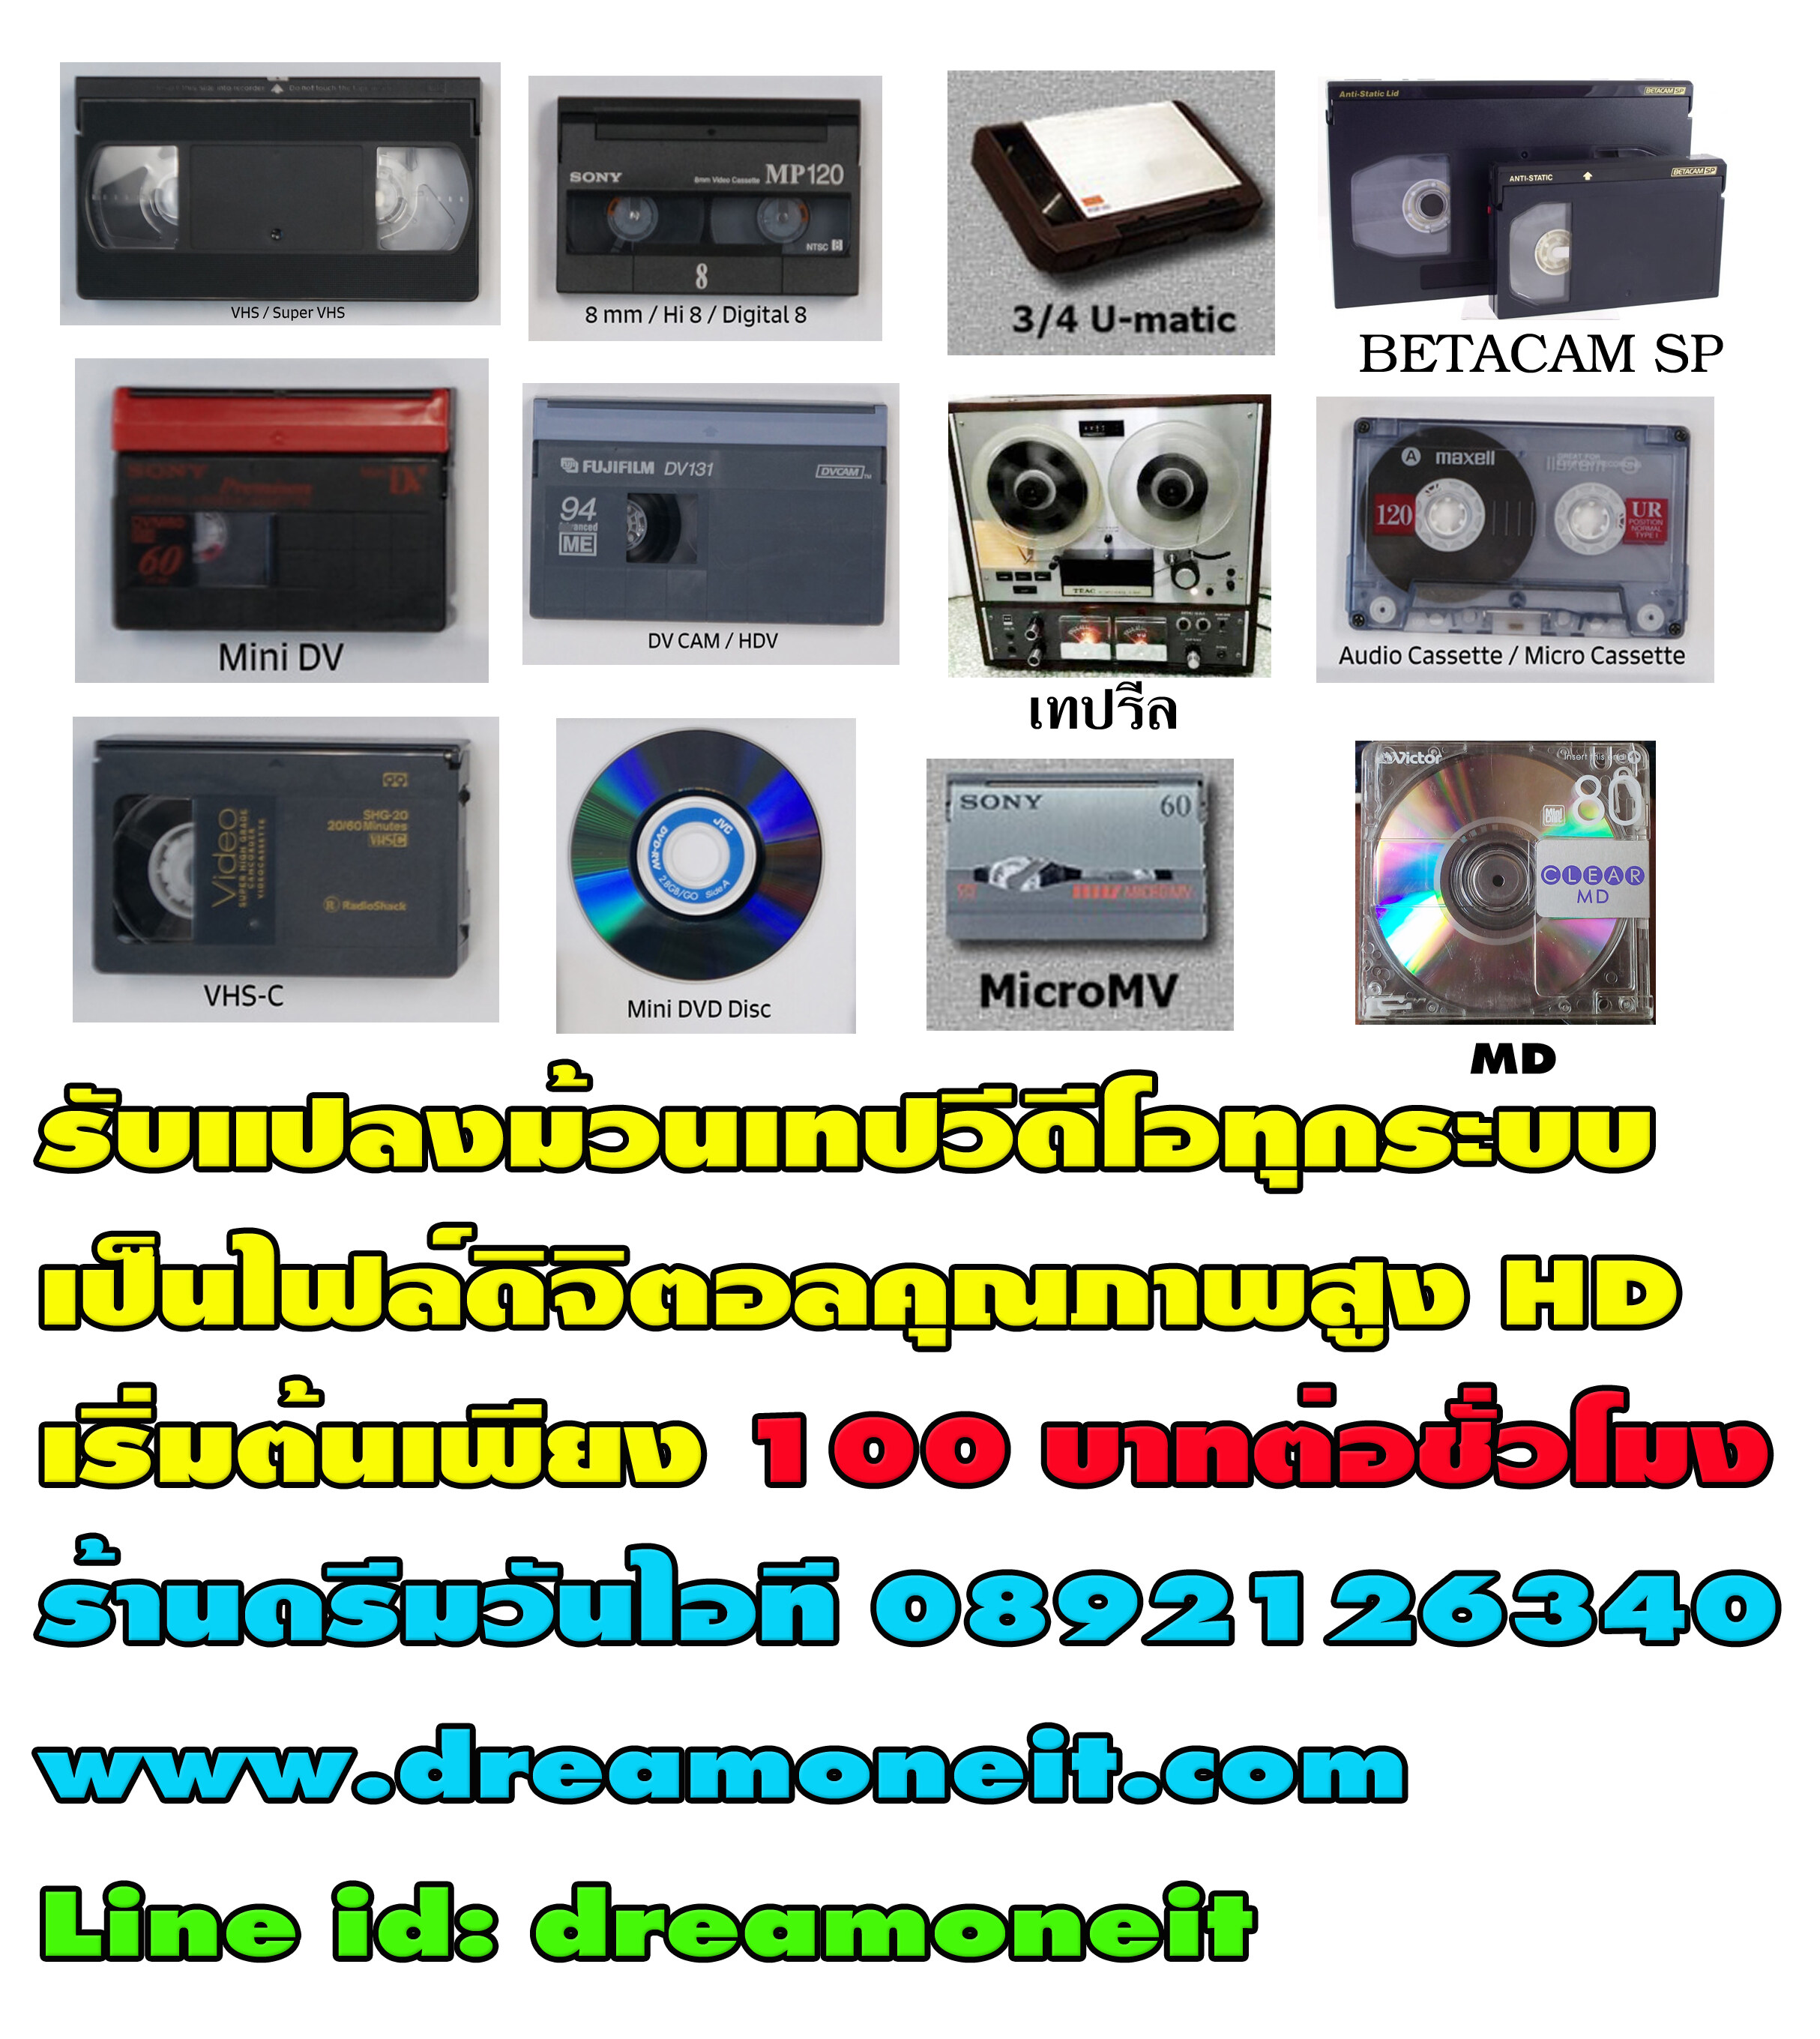 รับแปลงม้วน VDO เป็นไฟล์HD ดิจิตอล ลงแฟลชไดร์ หรือฮาร์ดดิสก์หรือลงแผ่น DVD อัดระบบคุณภาพสูง ม้วน VDO VHS -ม้วน Mini DV - ม้วน VDO8-HI8 - Digital8 VHS-C